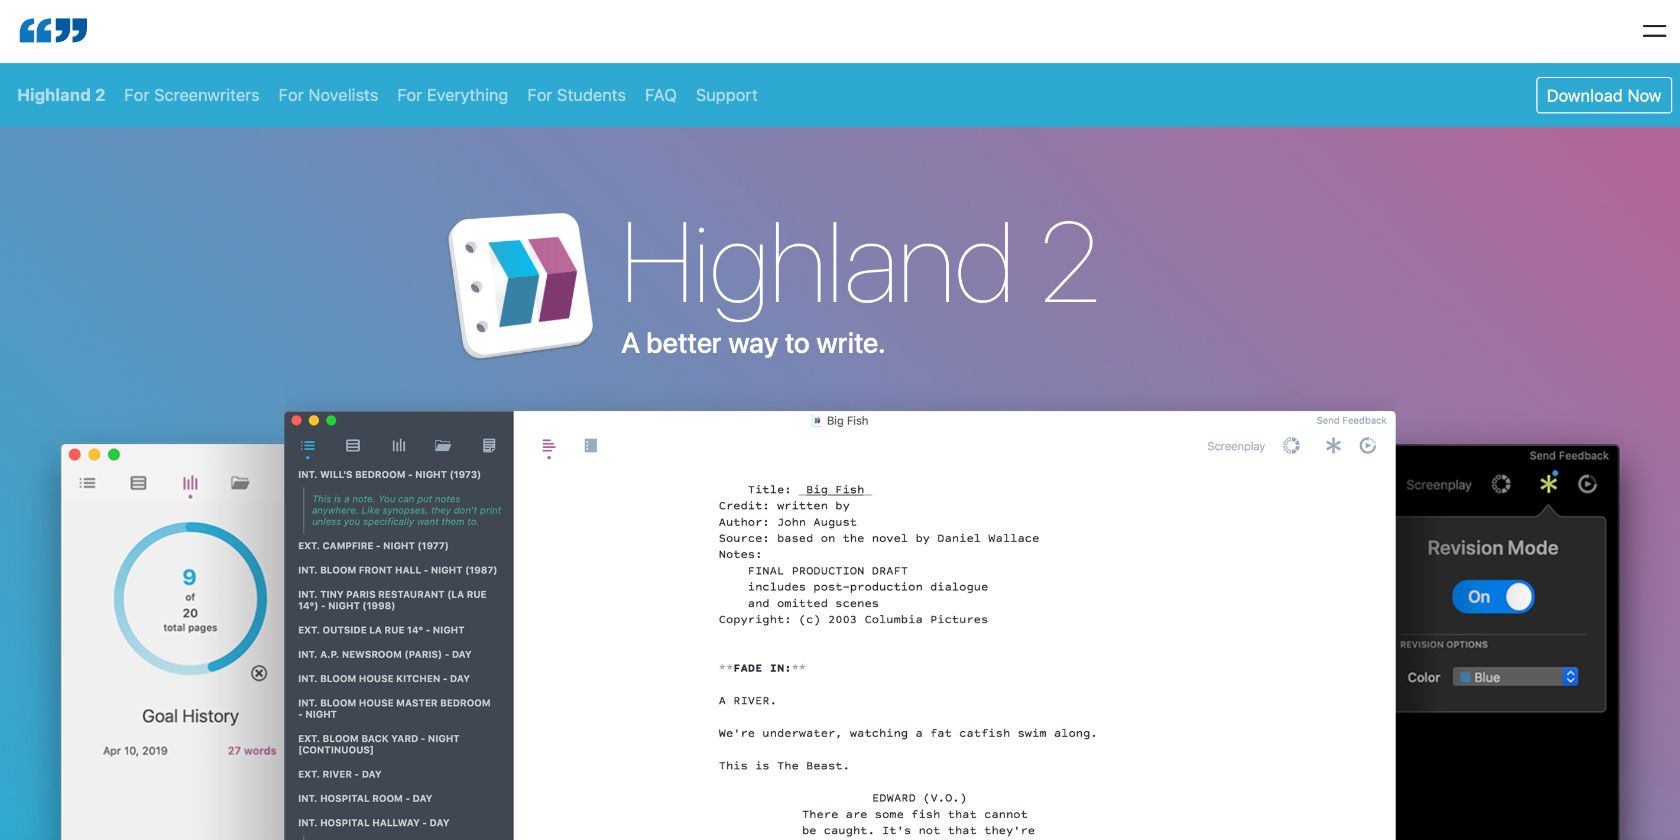 Die 7 besten Drehbuch-Apps für Windows und Mac - Highland 2 free screenwriting Mac app